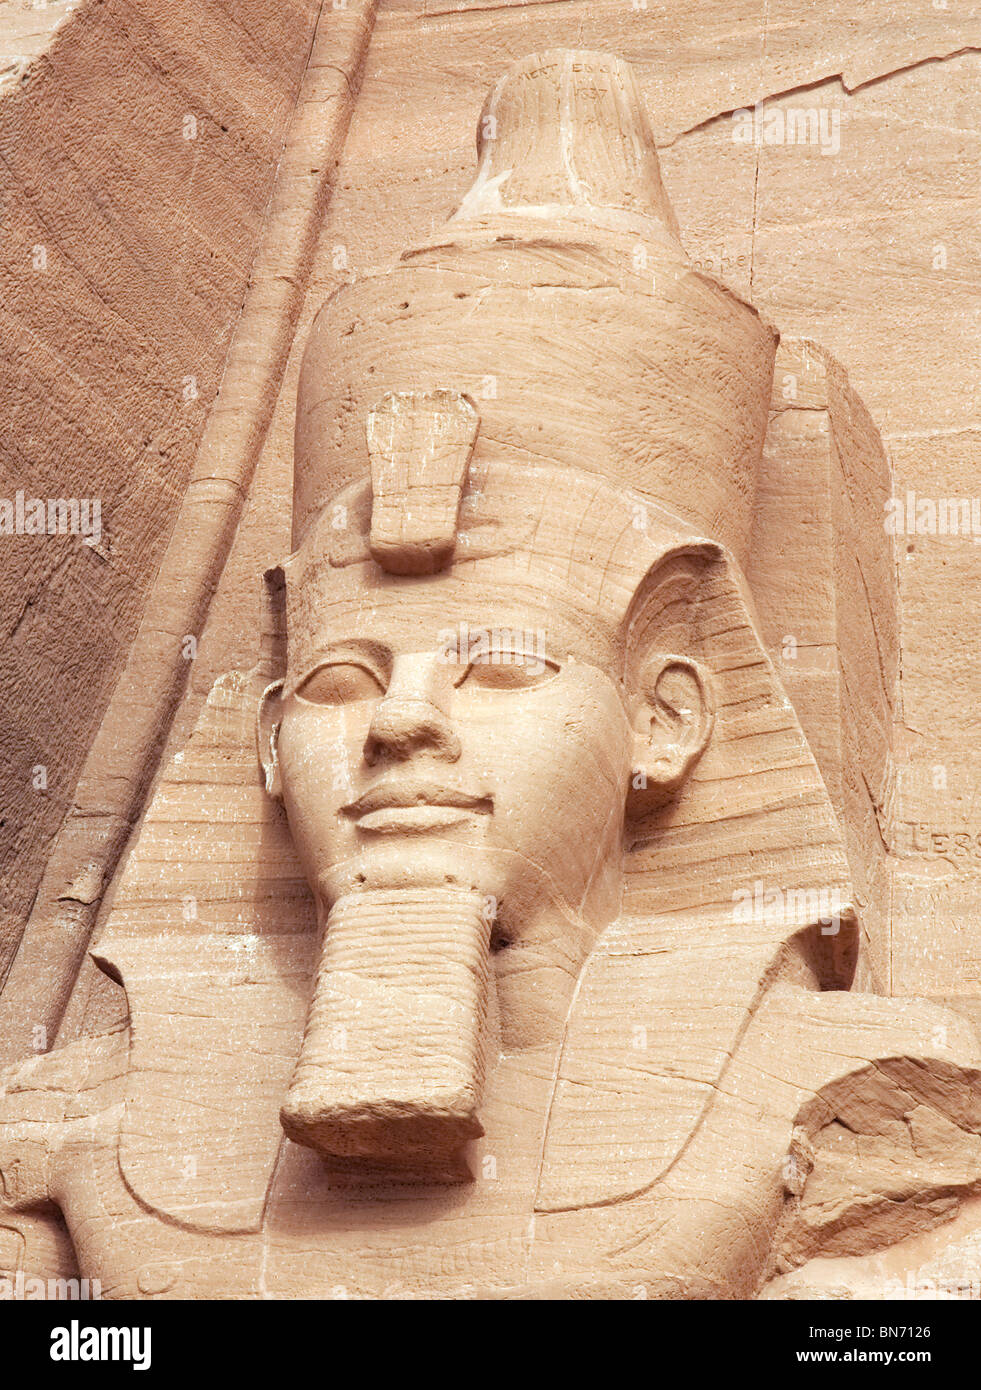 Égypte ancienne; gros plan du chef de l'une des statues de Ramses II au Grand temple, Abu Simbel, Haute-Égypte, Afrique Banque D'Images